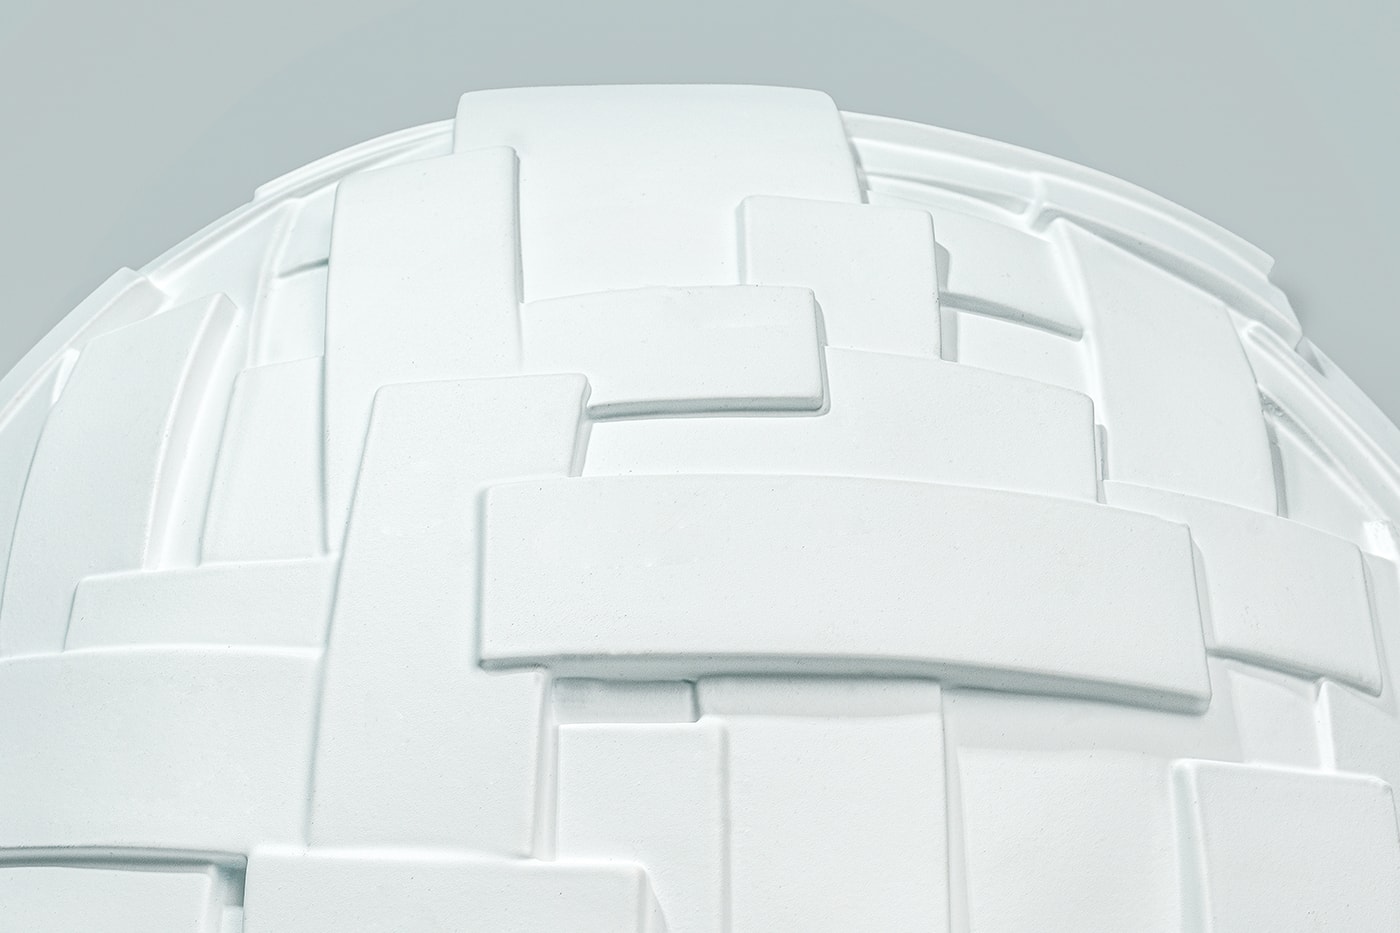 知名藝術家 Michael Kagan 打造太空頭盔雕塑《A7L HELMET》